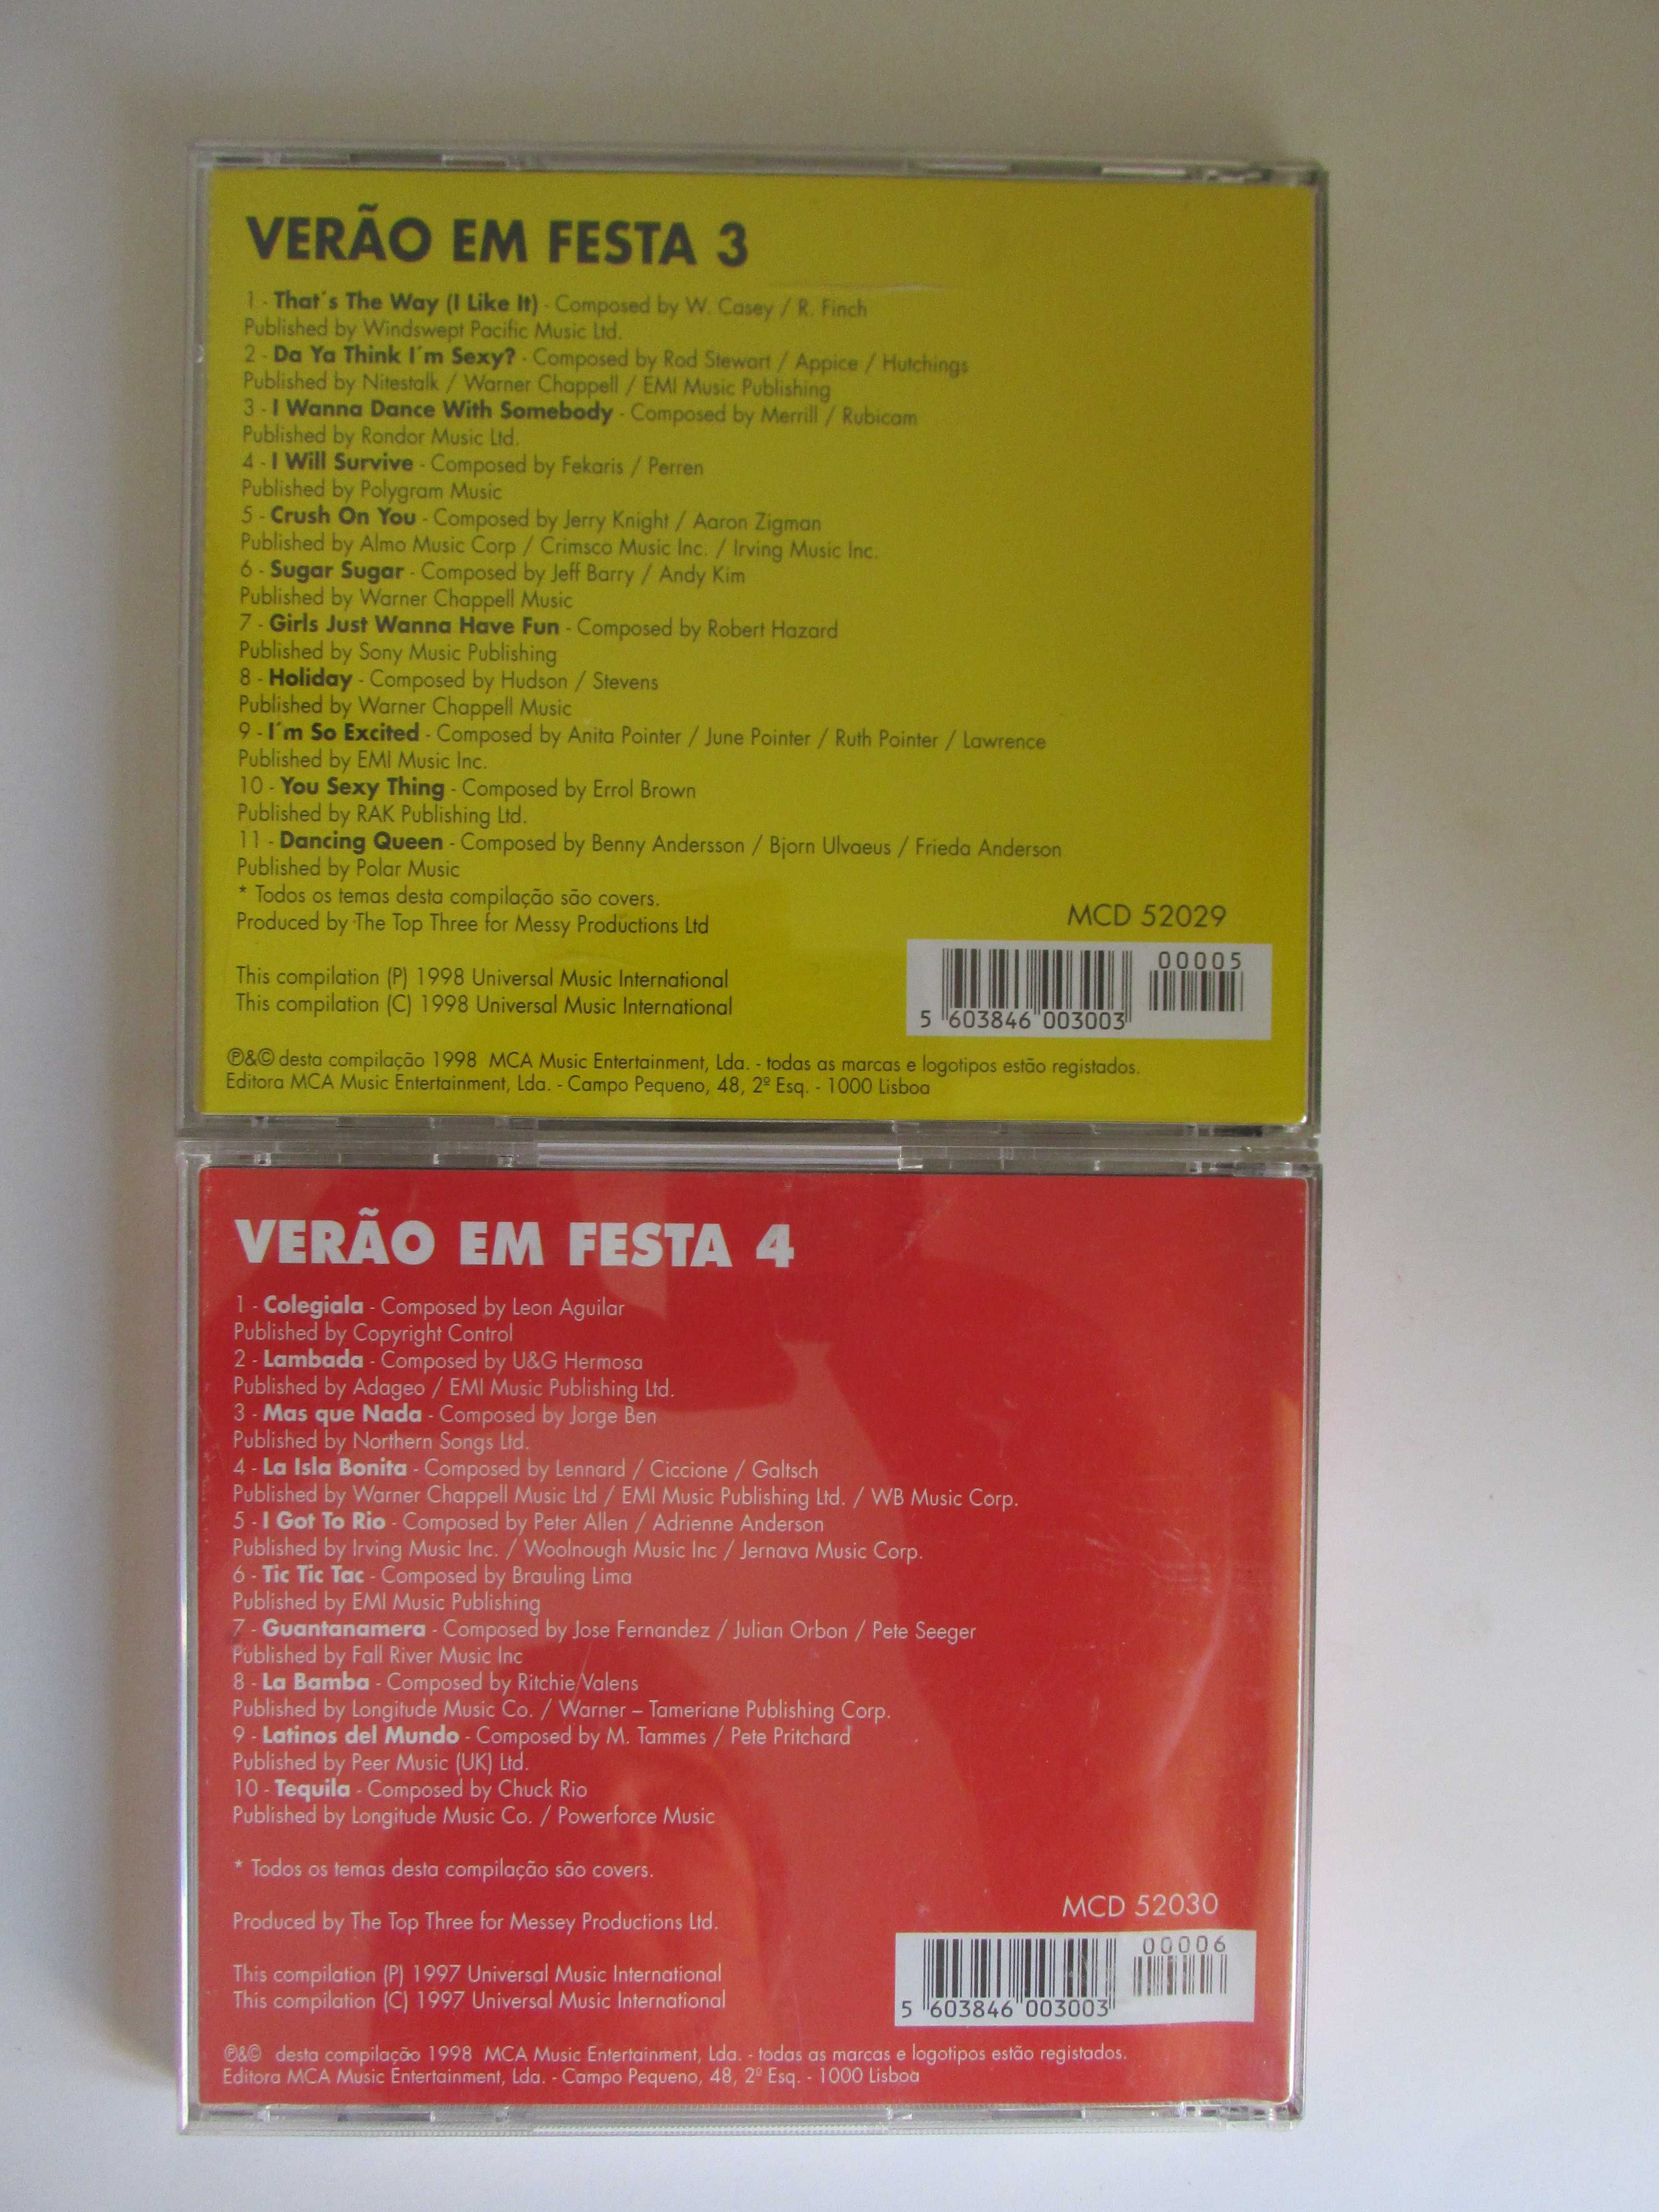 VERÃO Em Festa, uma coleção de 9 CDs, com alguns ainda selados